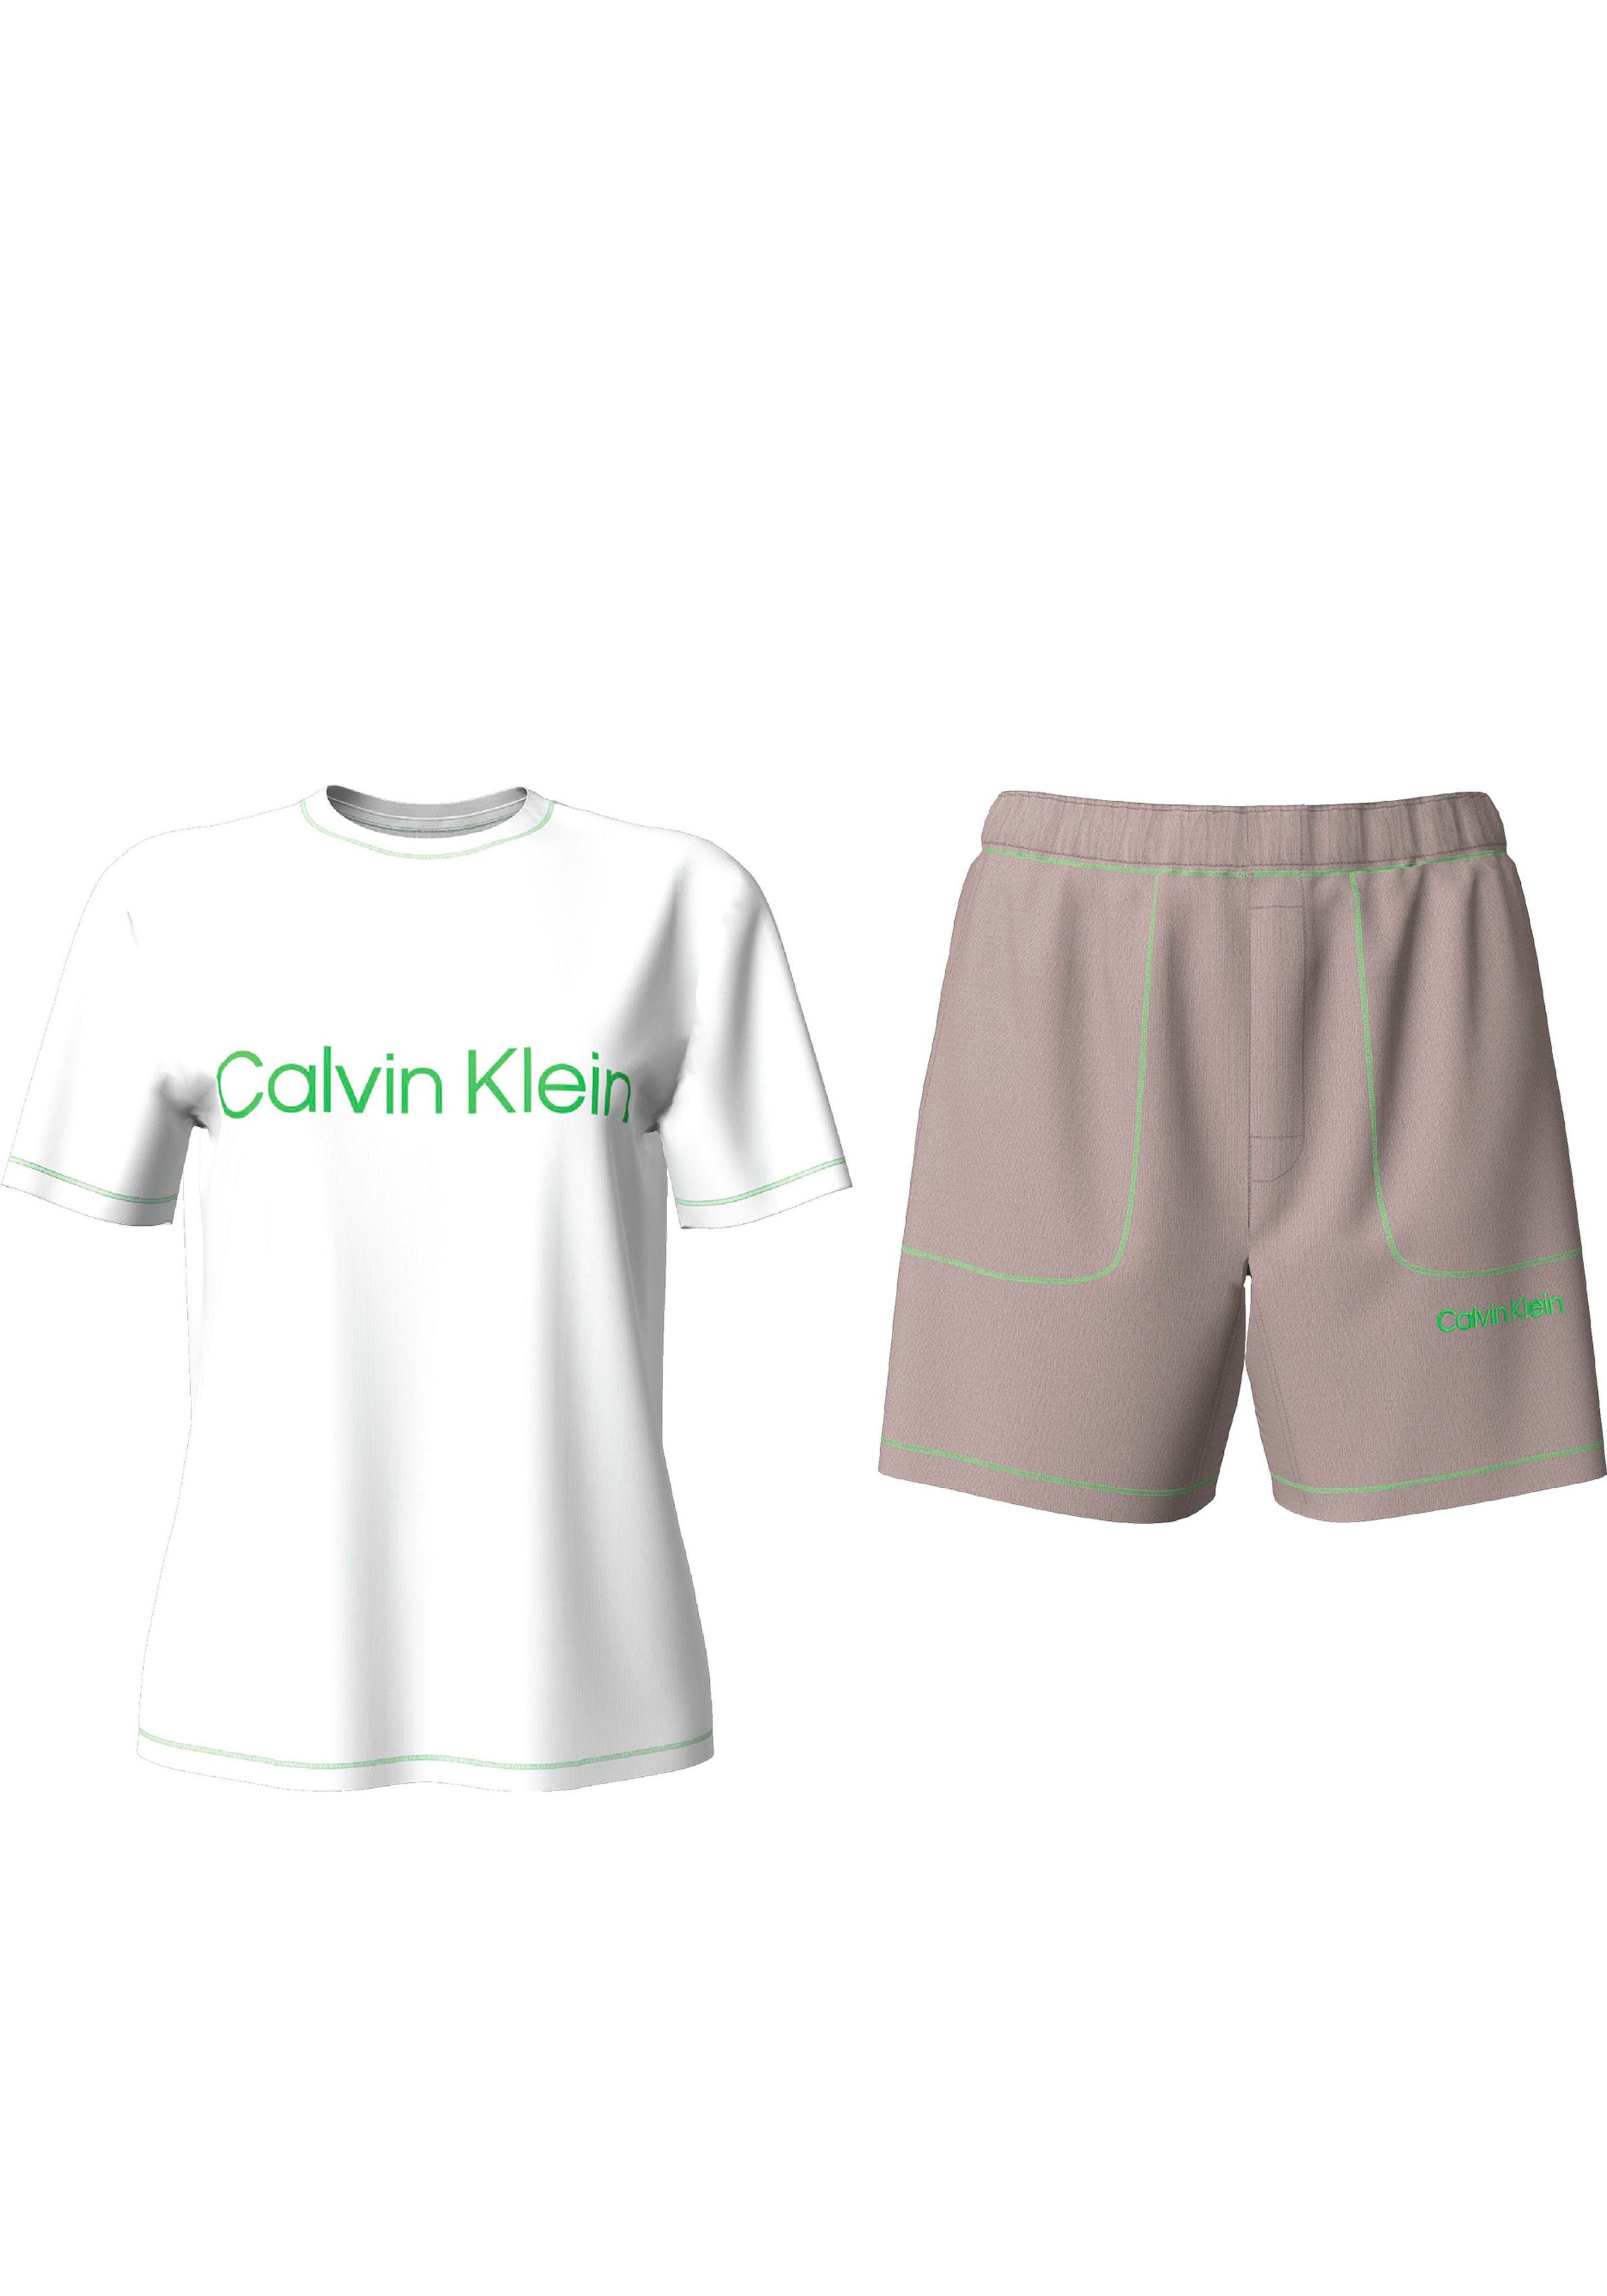 Calvin Klein Underwear SLEEP SET S/S Markenlabel Schlafanzug (2 tlg) mit